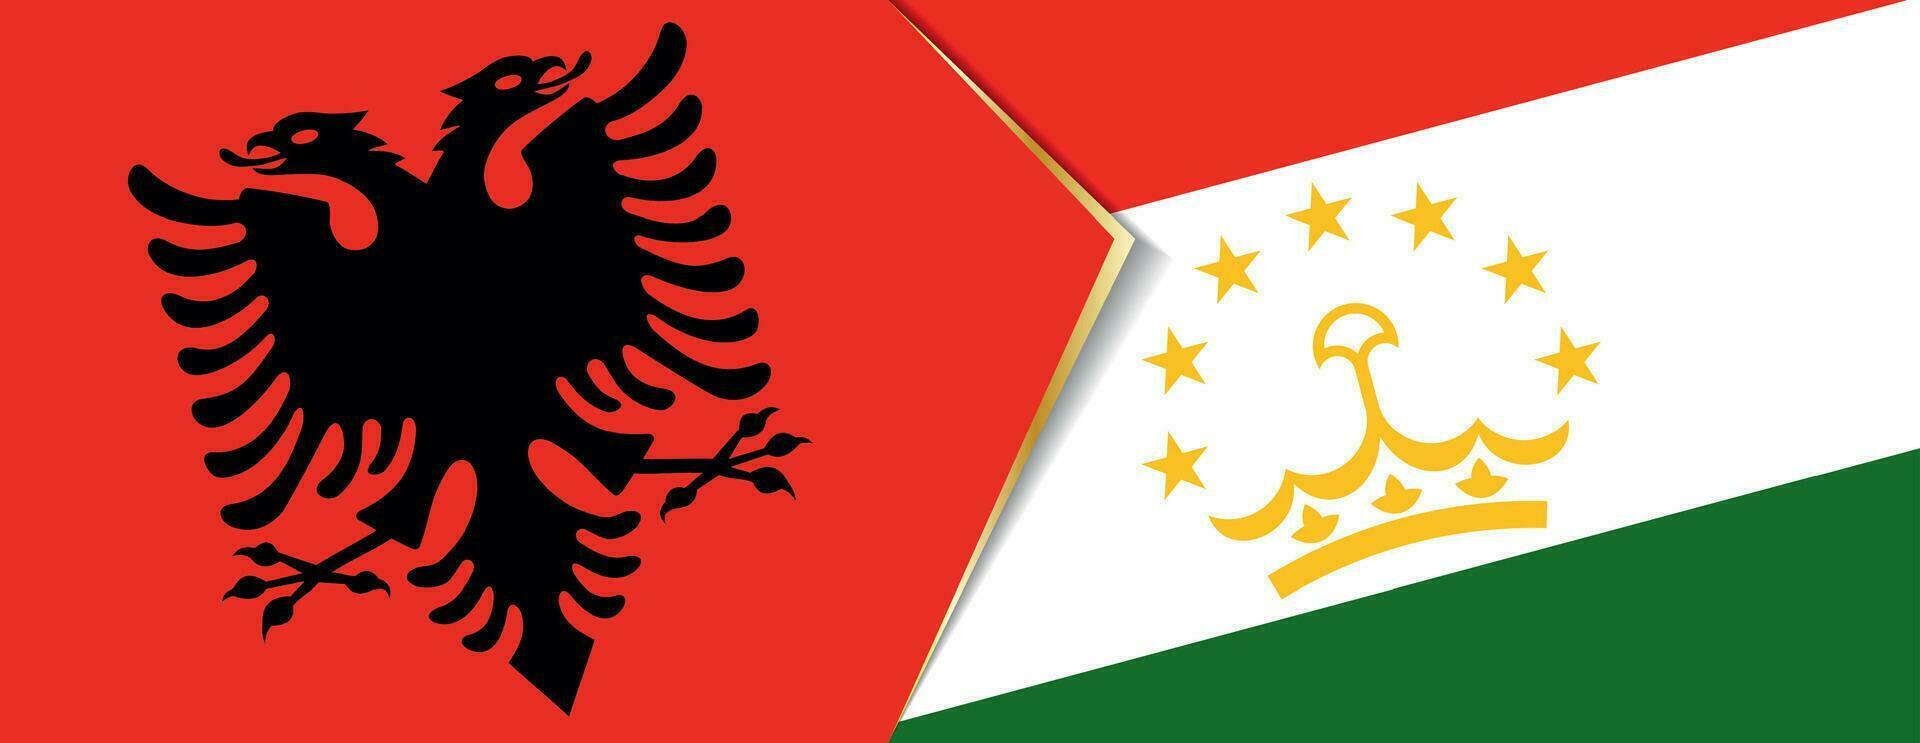 albania och tadzjikistan flaggor, två vektor flaggor.